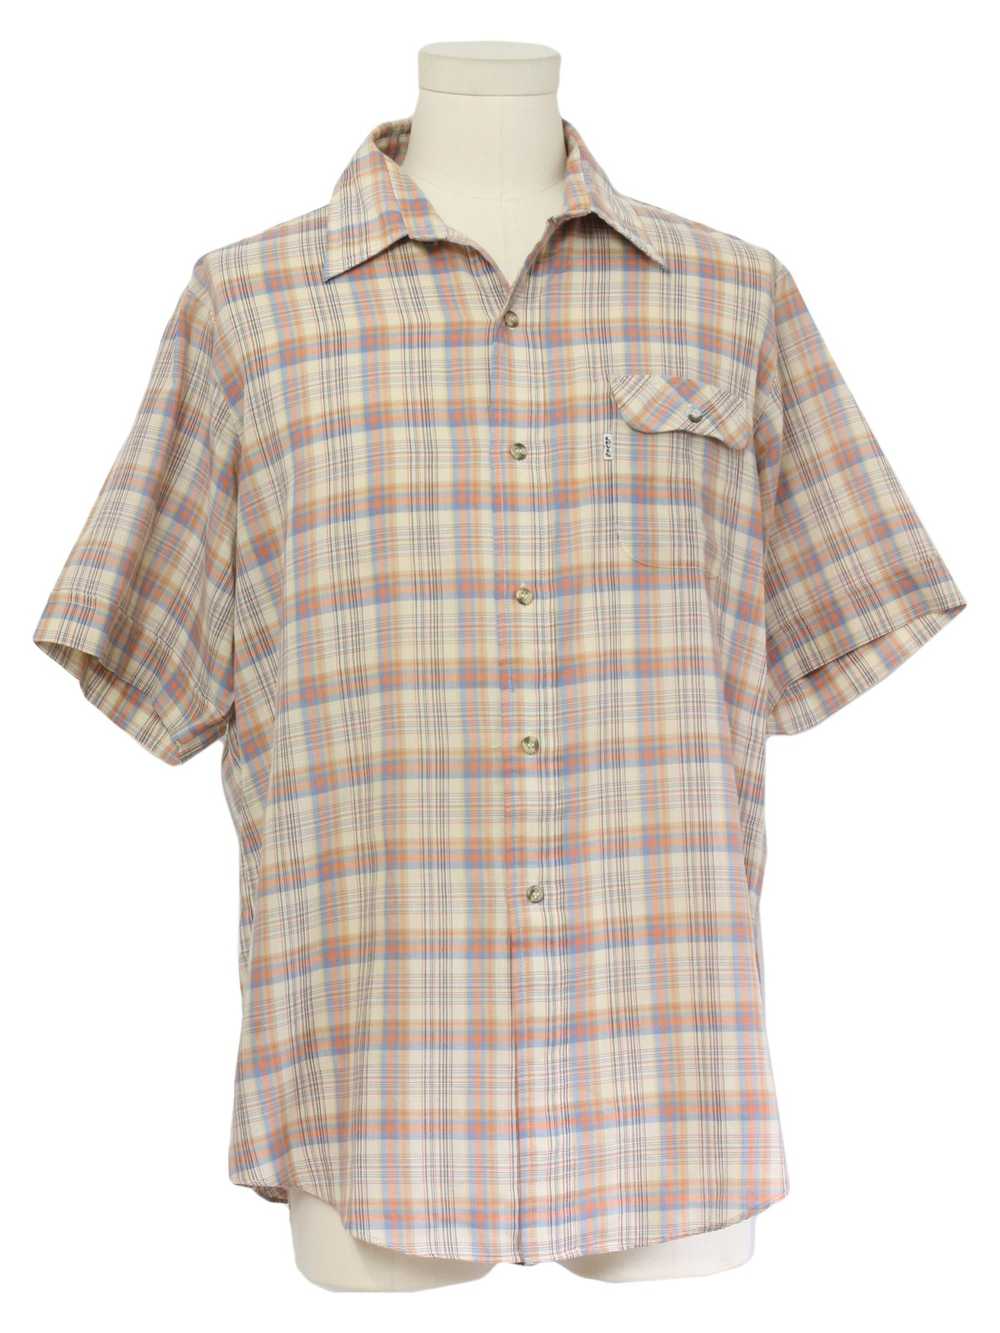 1980's Levis Mens Levis Plaid Shirt - image 1